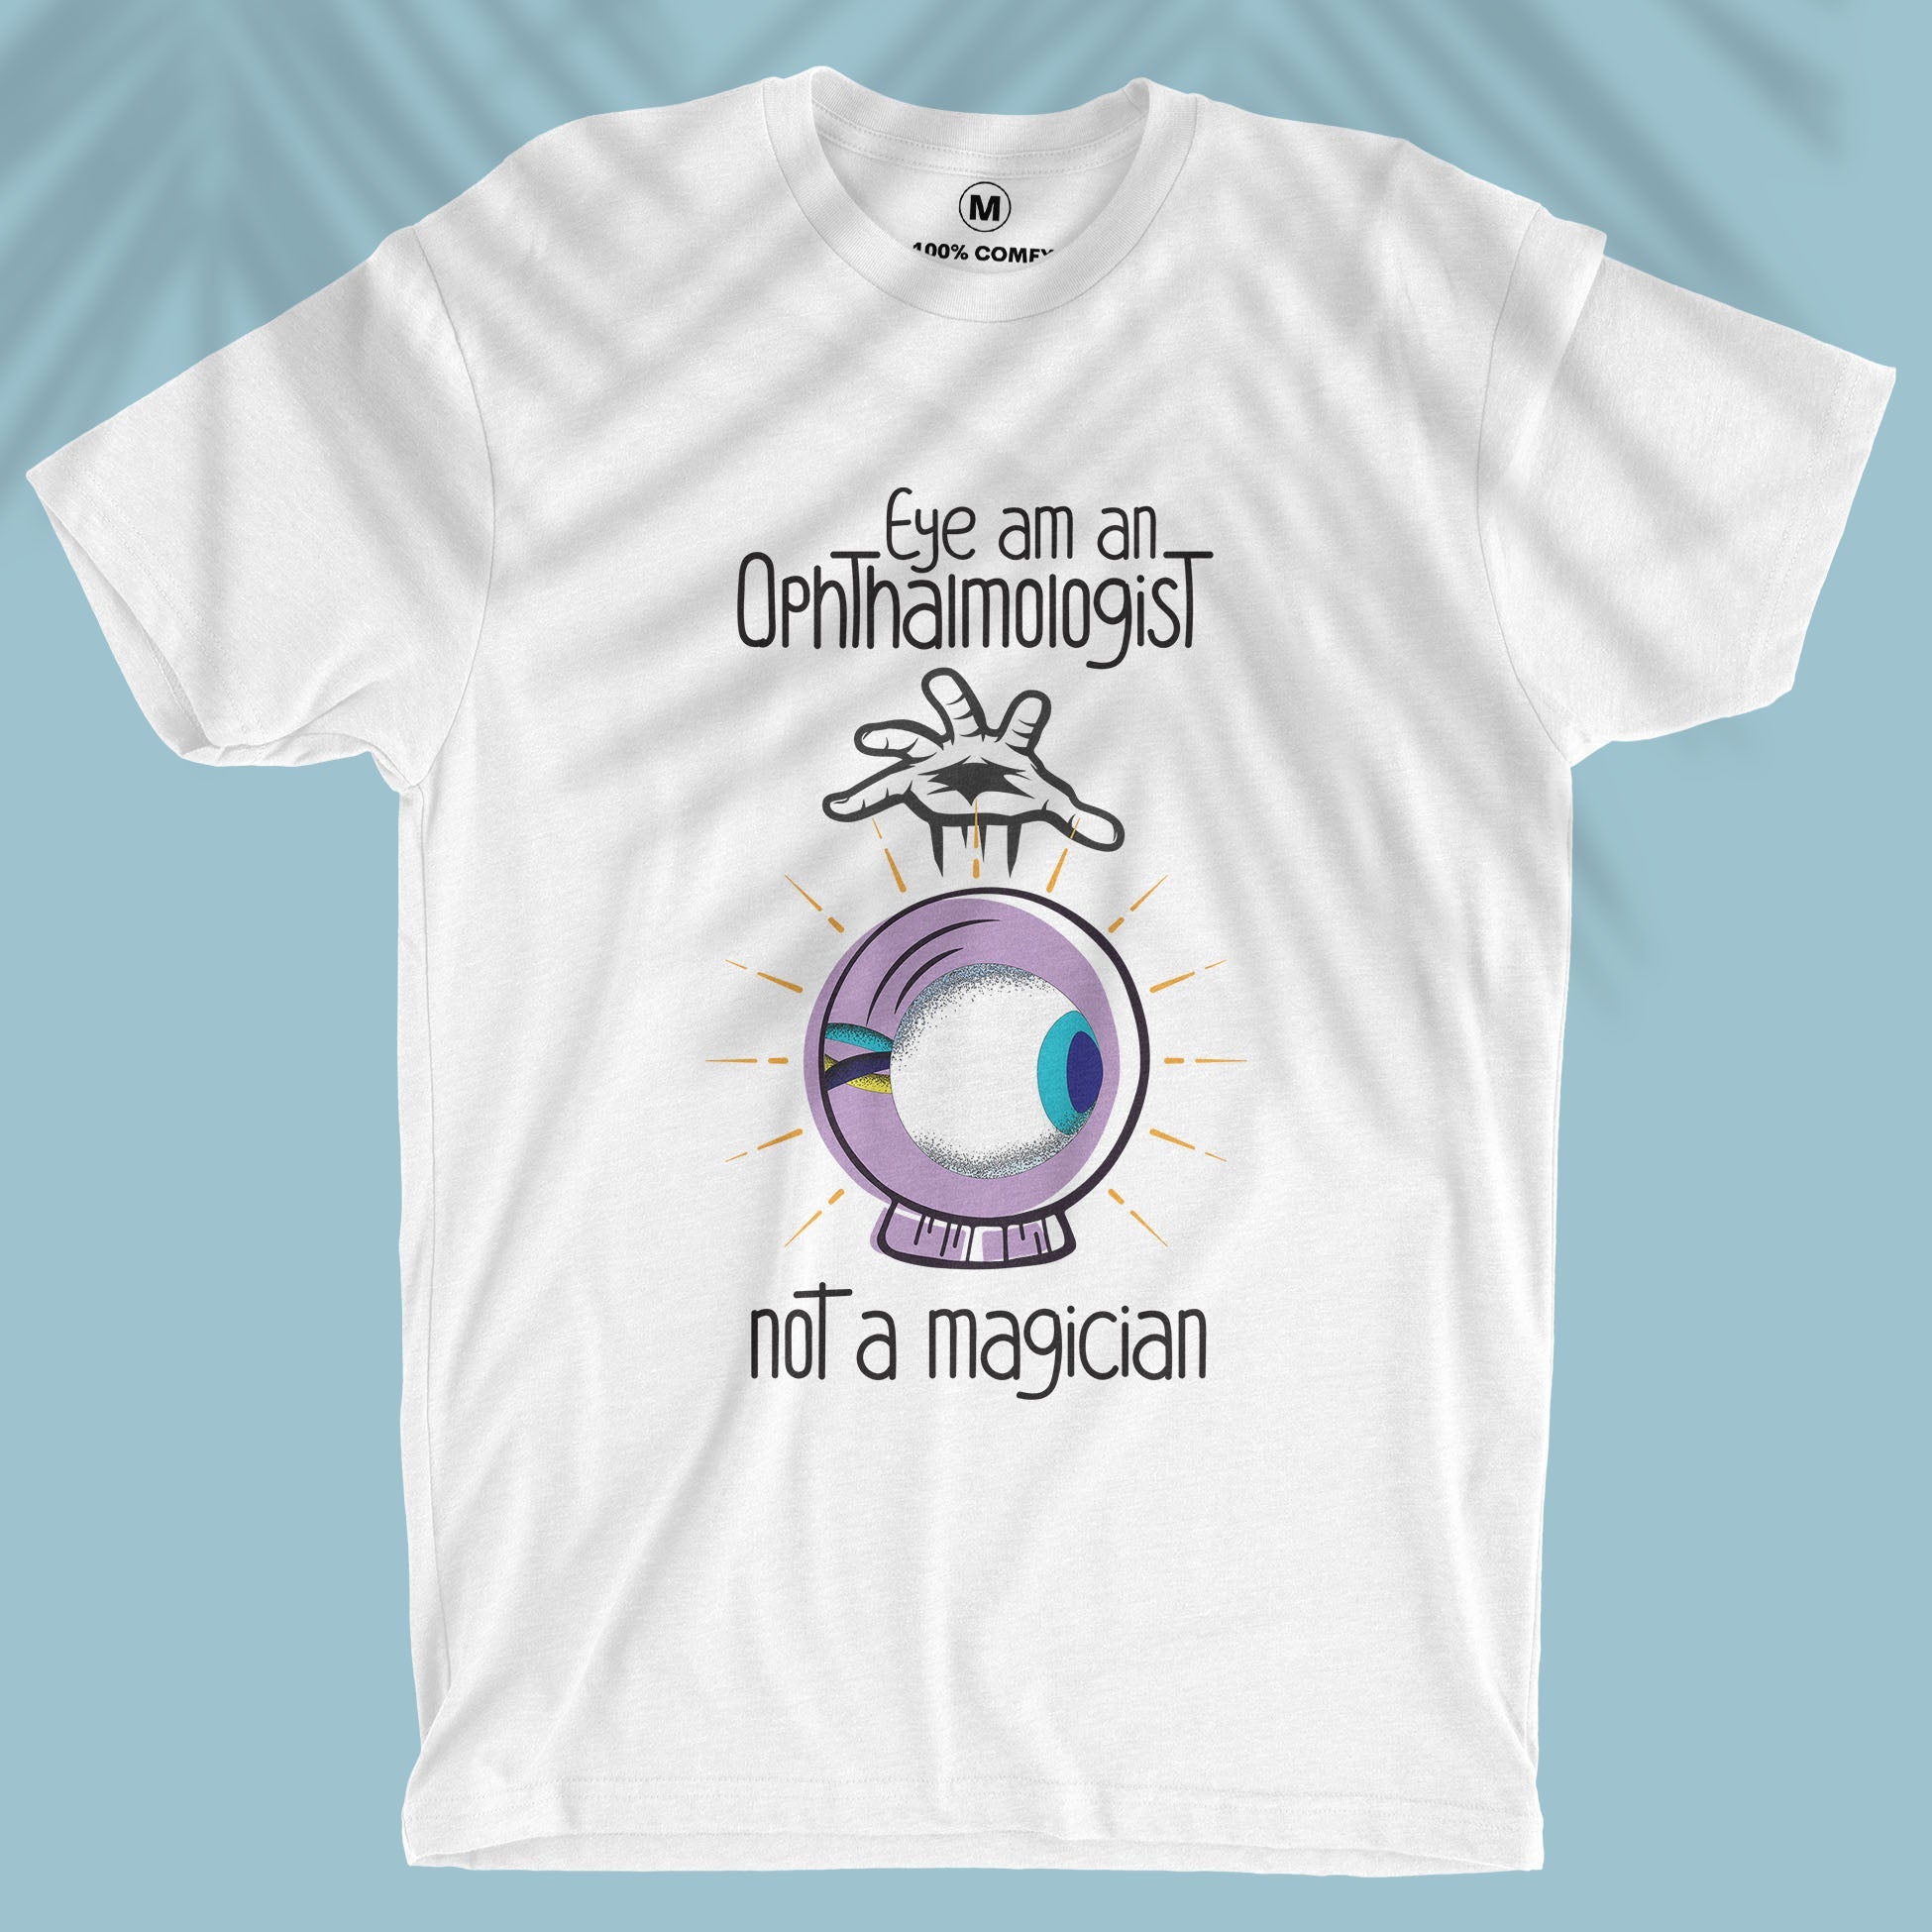 Eye am an Ophthalmologist, not a magician - Unisex T-shirt